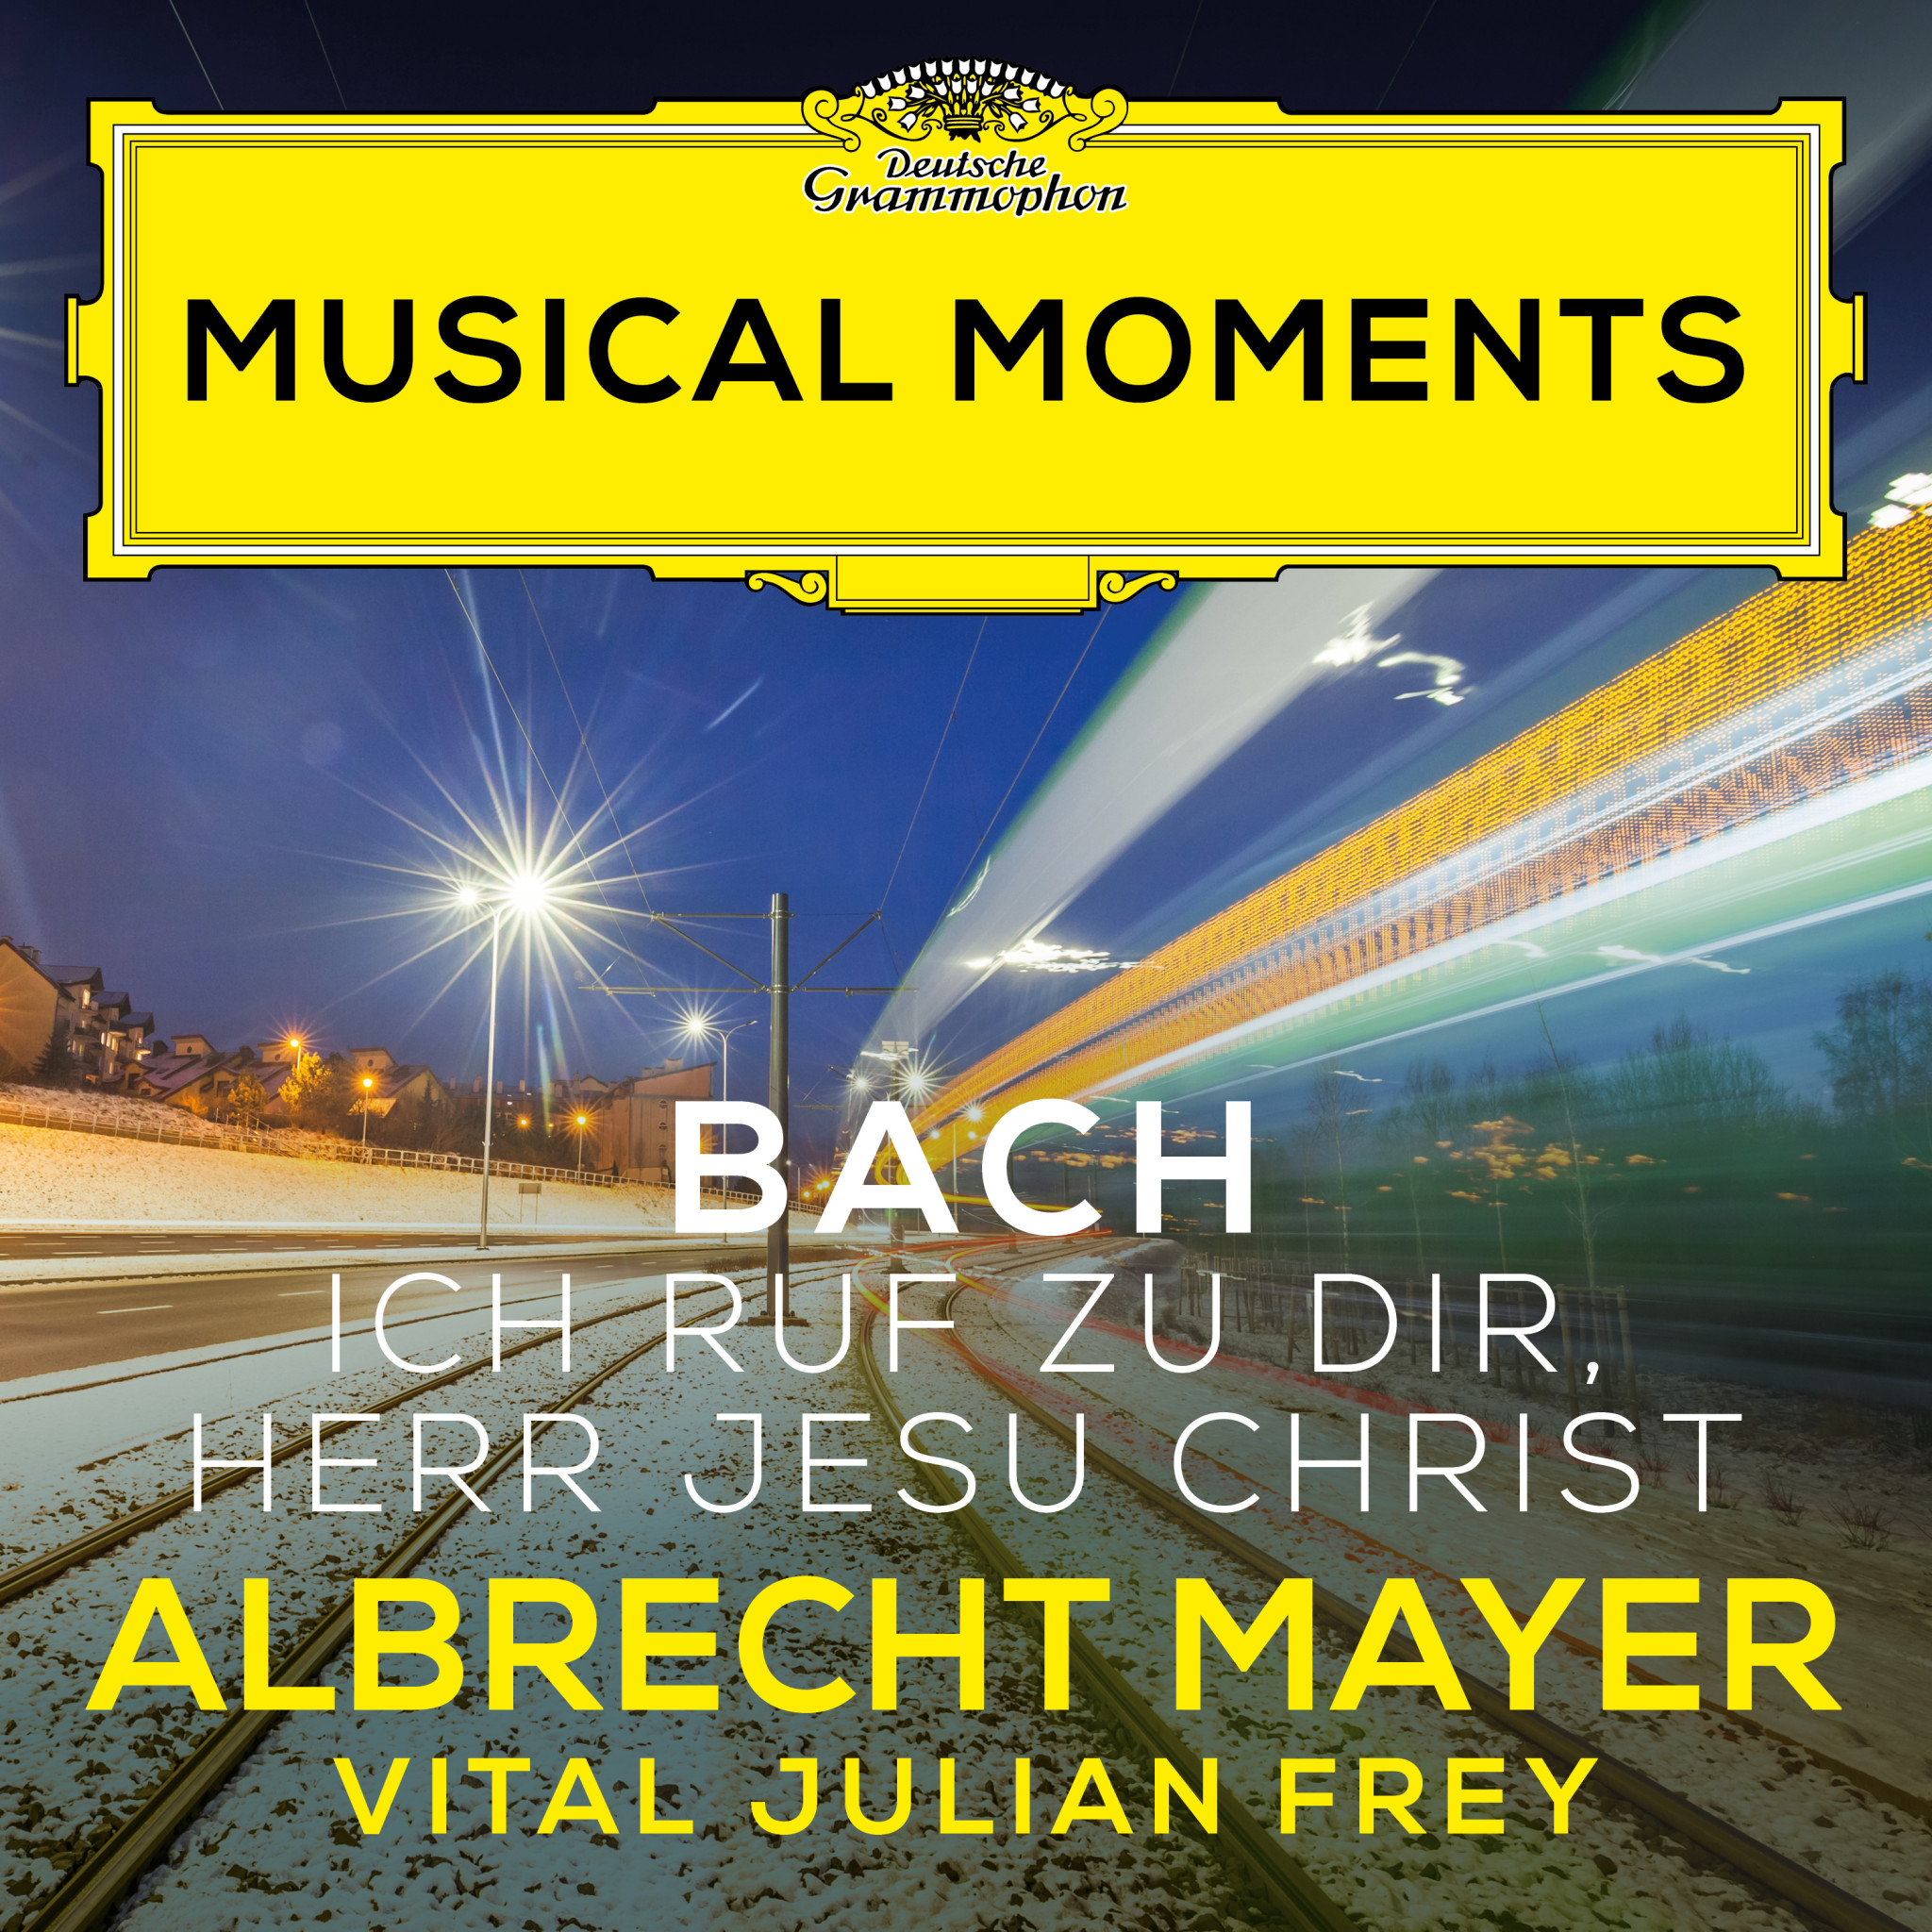 Albrecht Mayer - J.S. Bach: Ich ruf zu dir, Herr Jesu Christ, BWV 639 (Adapt. Tarkmann for Oboe d'amore and Harpsichord)